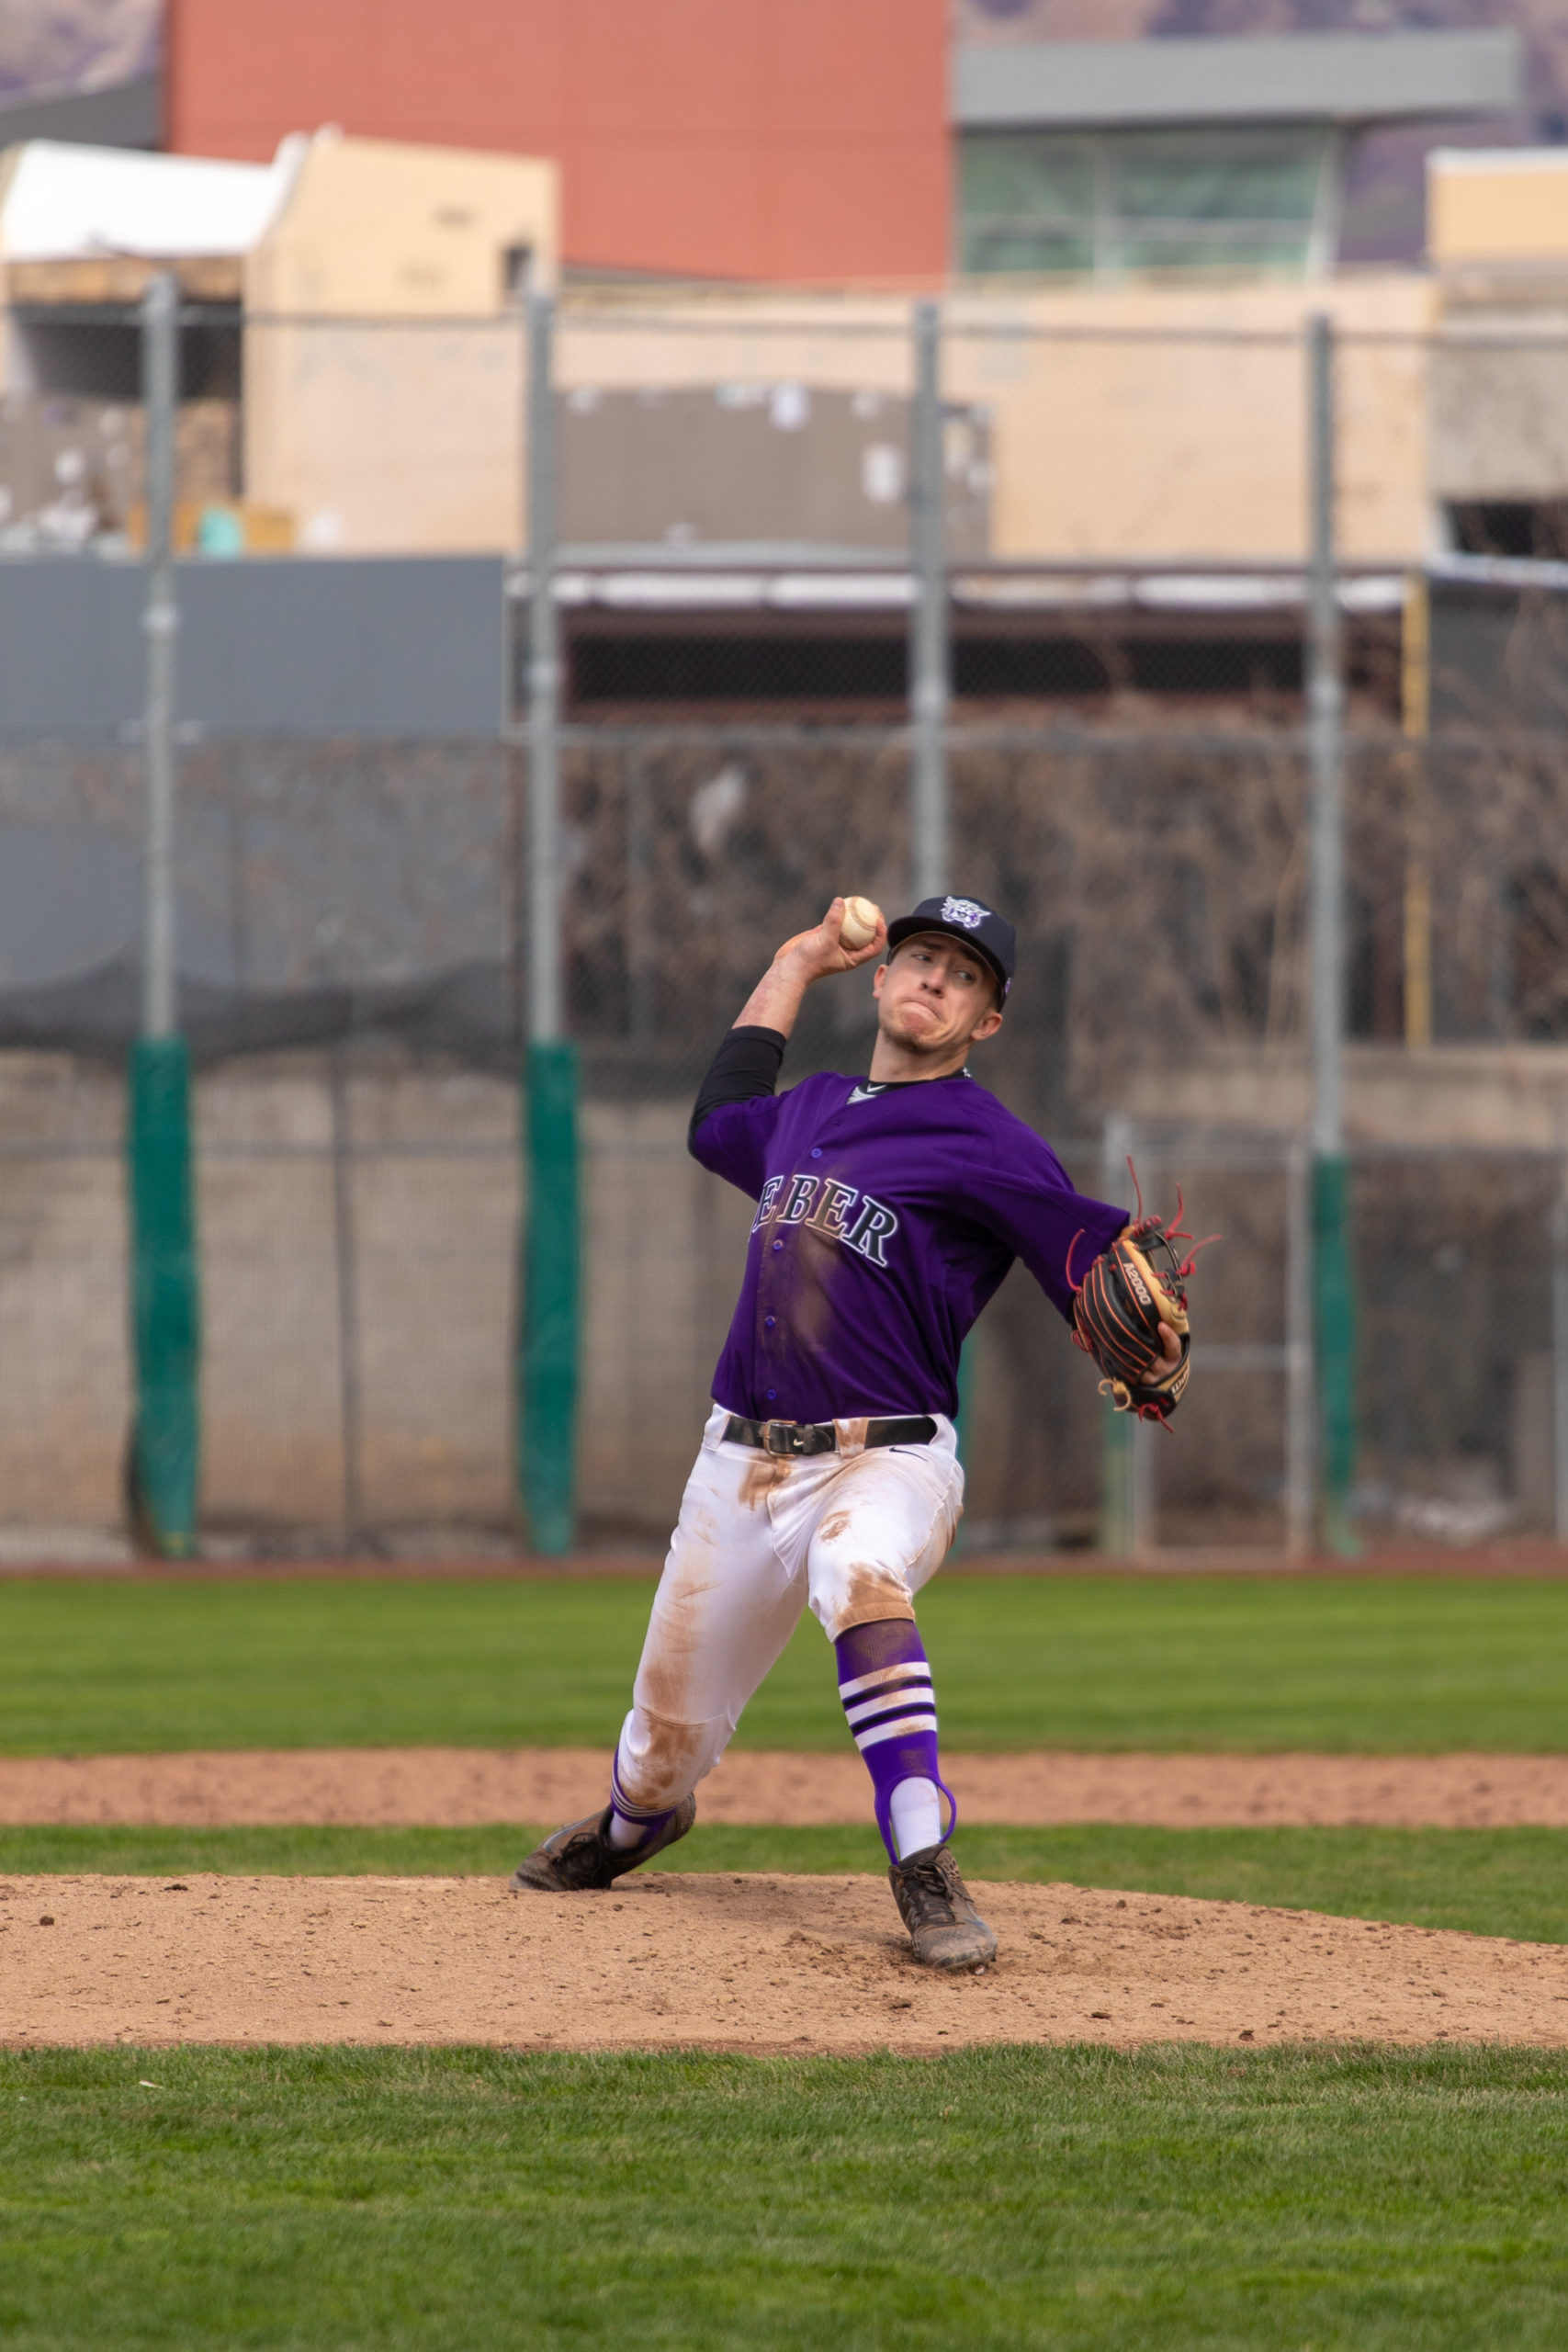 Jimmy Jimenez throwing a pitch. Taken in April 2019.